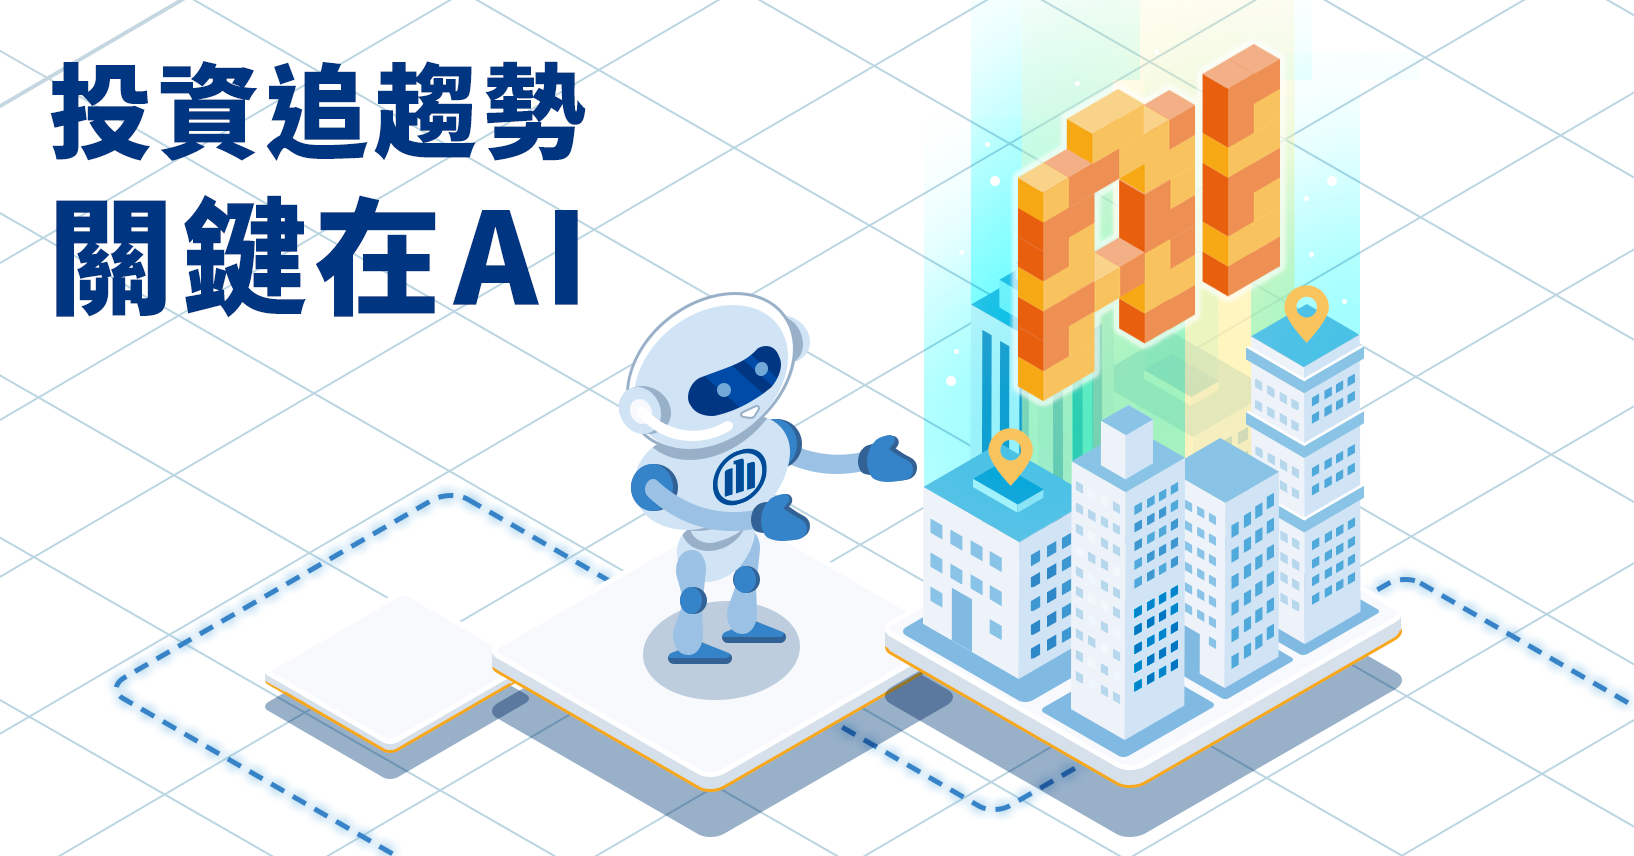 照片中提到了投資追趨勢、關鍵在AI，包含了台灣下一個、剪貼畫、產品設計、台灣、成功